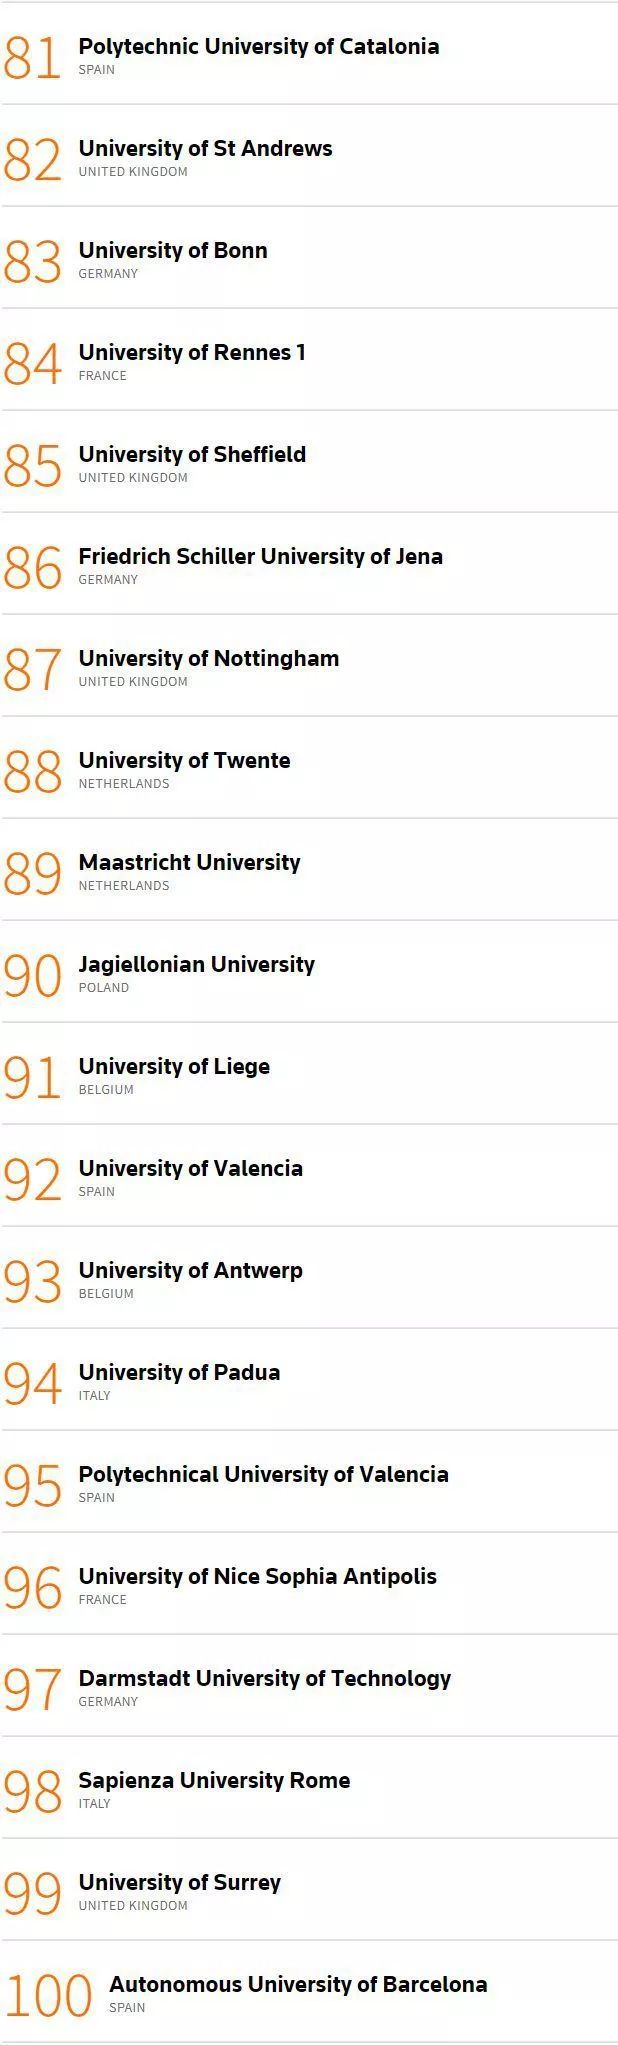 2019欧洲创新力大学排名重磅发布6